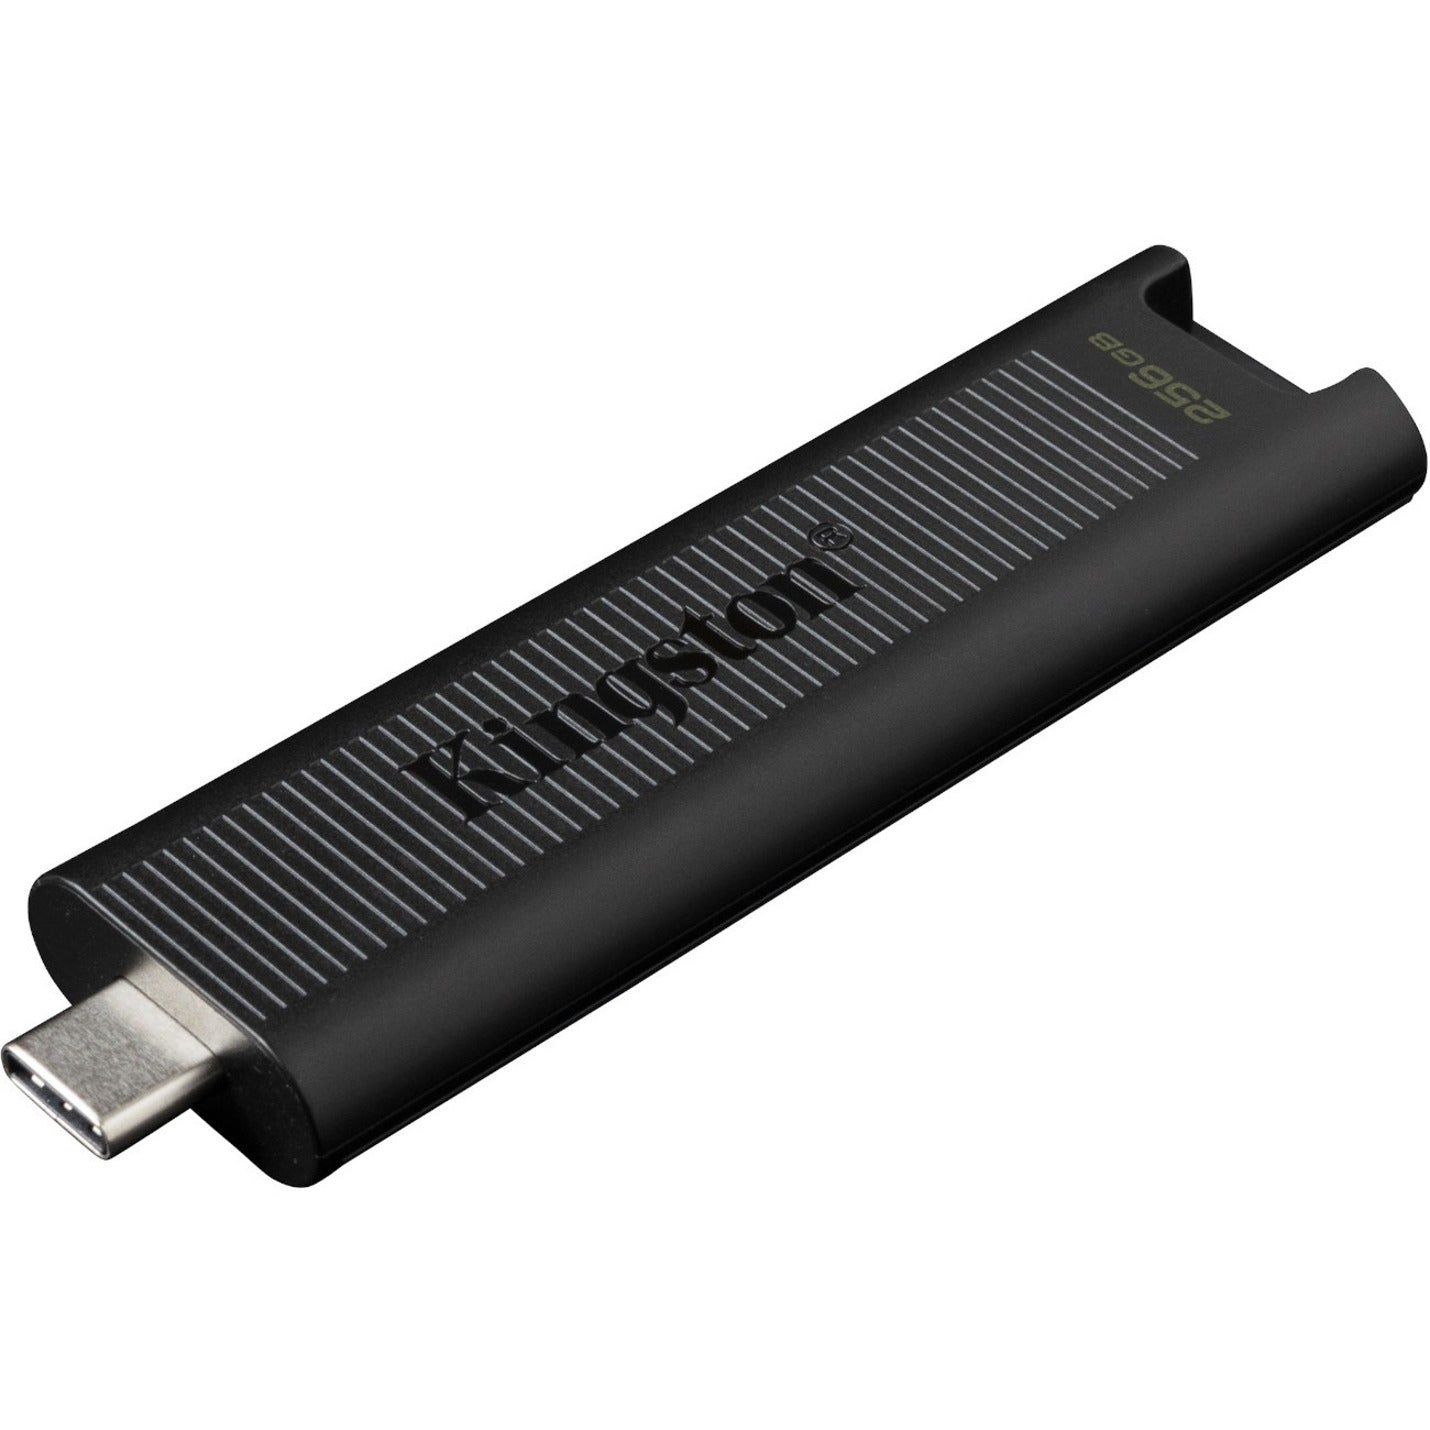 Kingston DTMAX/256GB DataTraveler Max USB 3.2 Gen 2 Flash Drive, 256GB Storage, 1000 MB/s Read Speed, 900 MB/s Write Speed